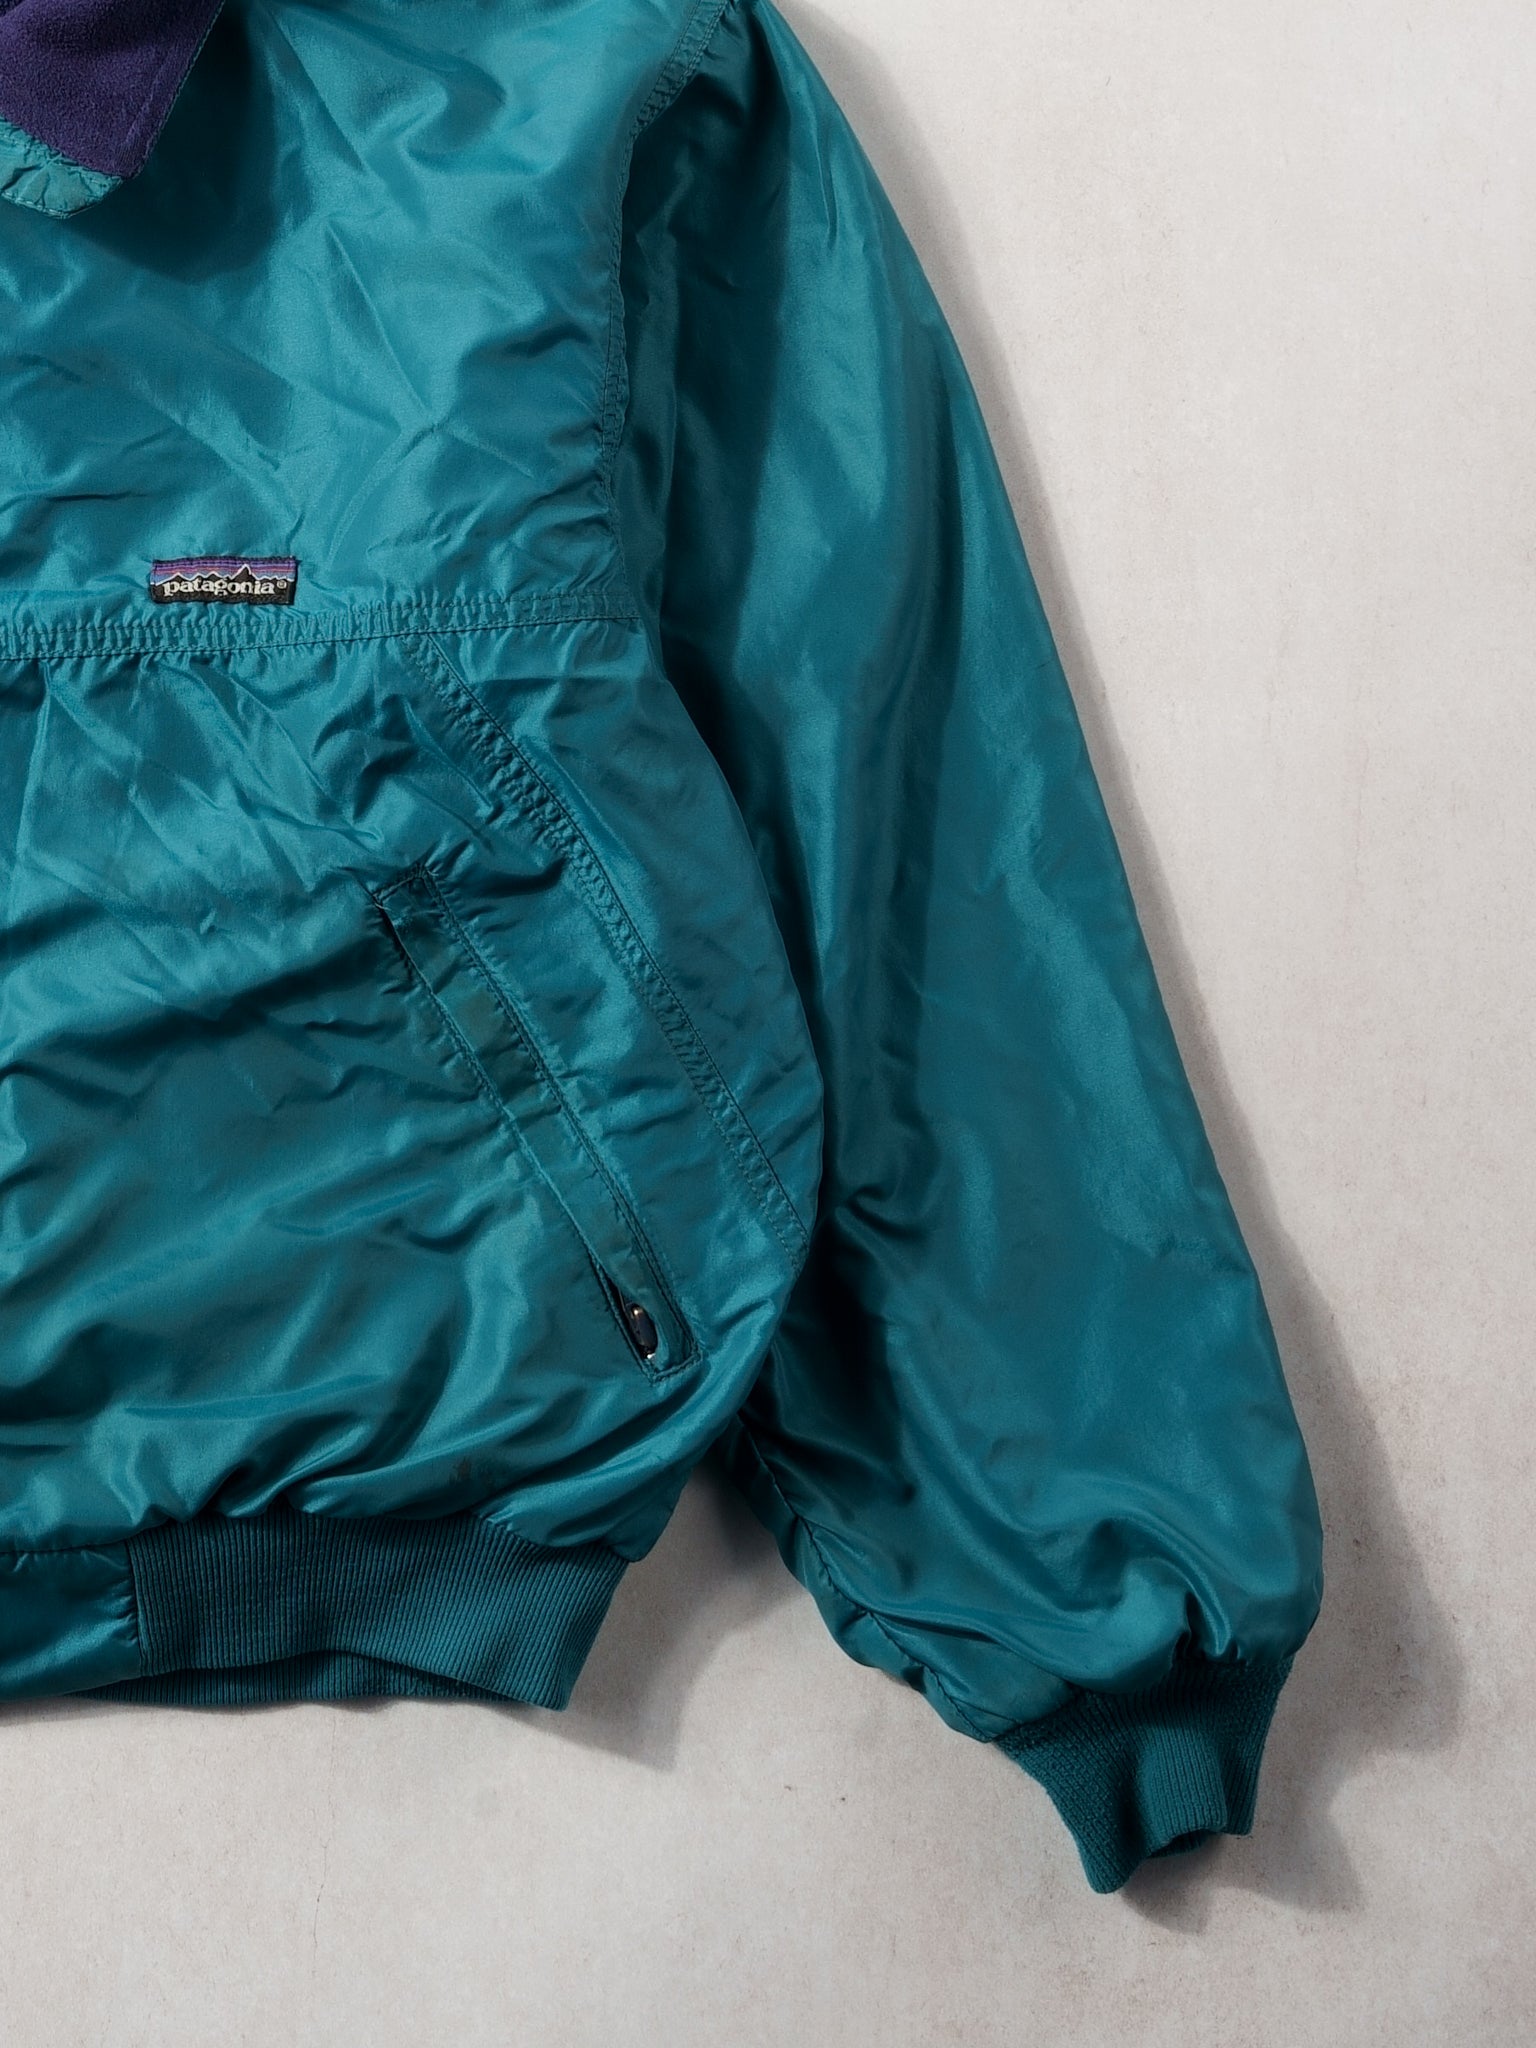 Vintage 90s Teal Patagonia Collared Windbreaker Jacket (L)